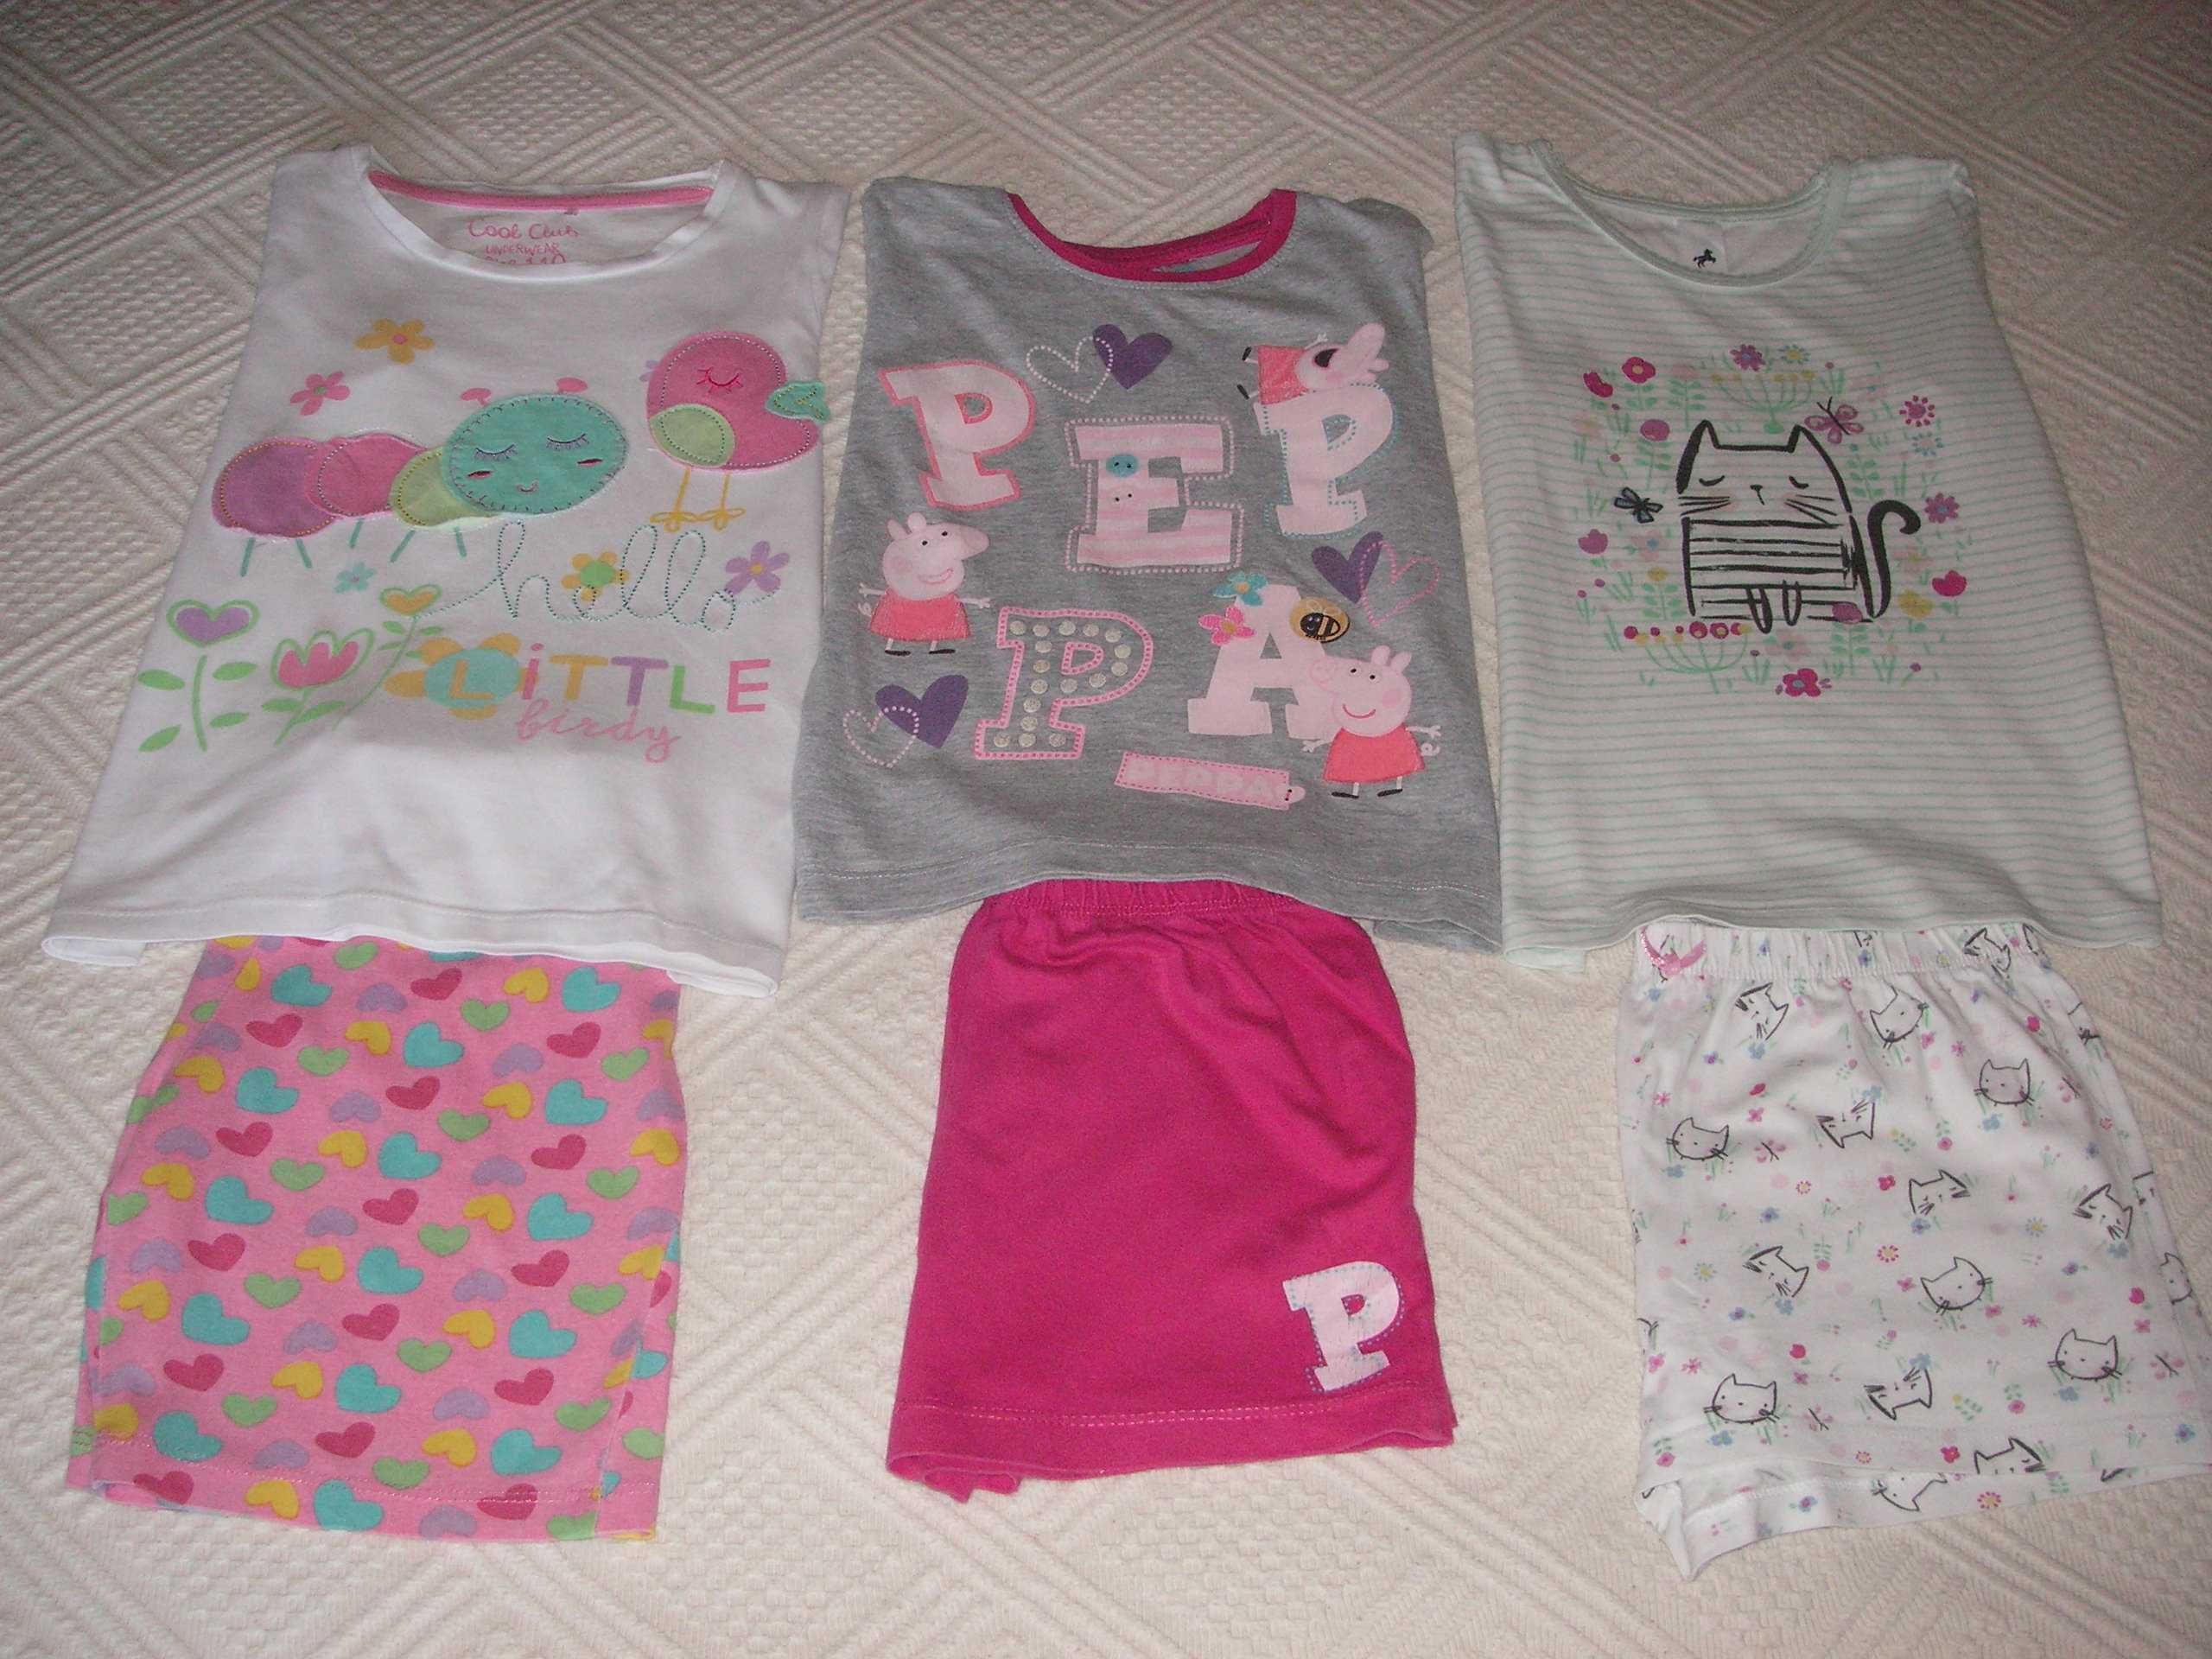 Pijamas Cool Club, Pepa e Palomino T/110